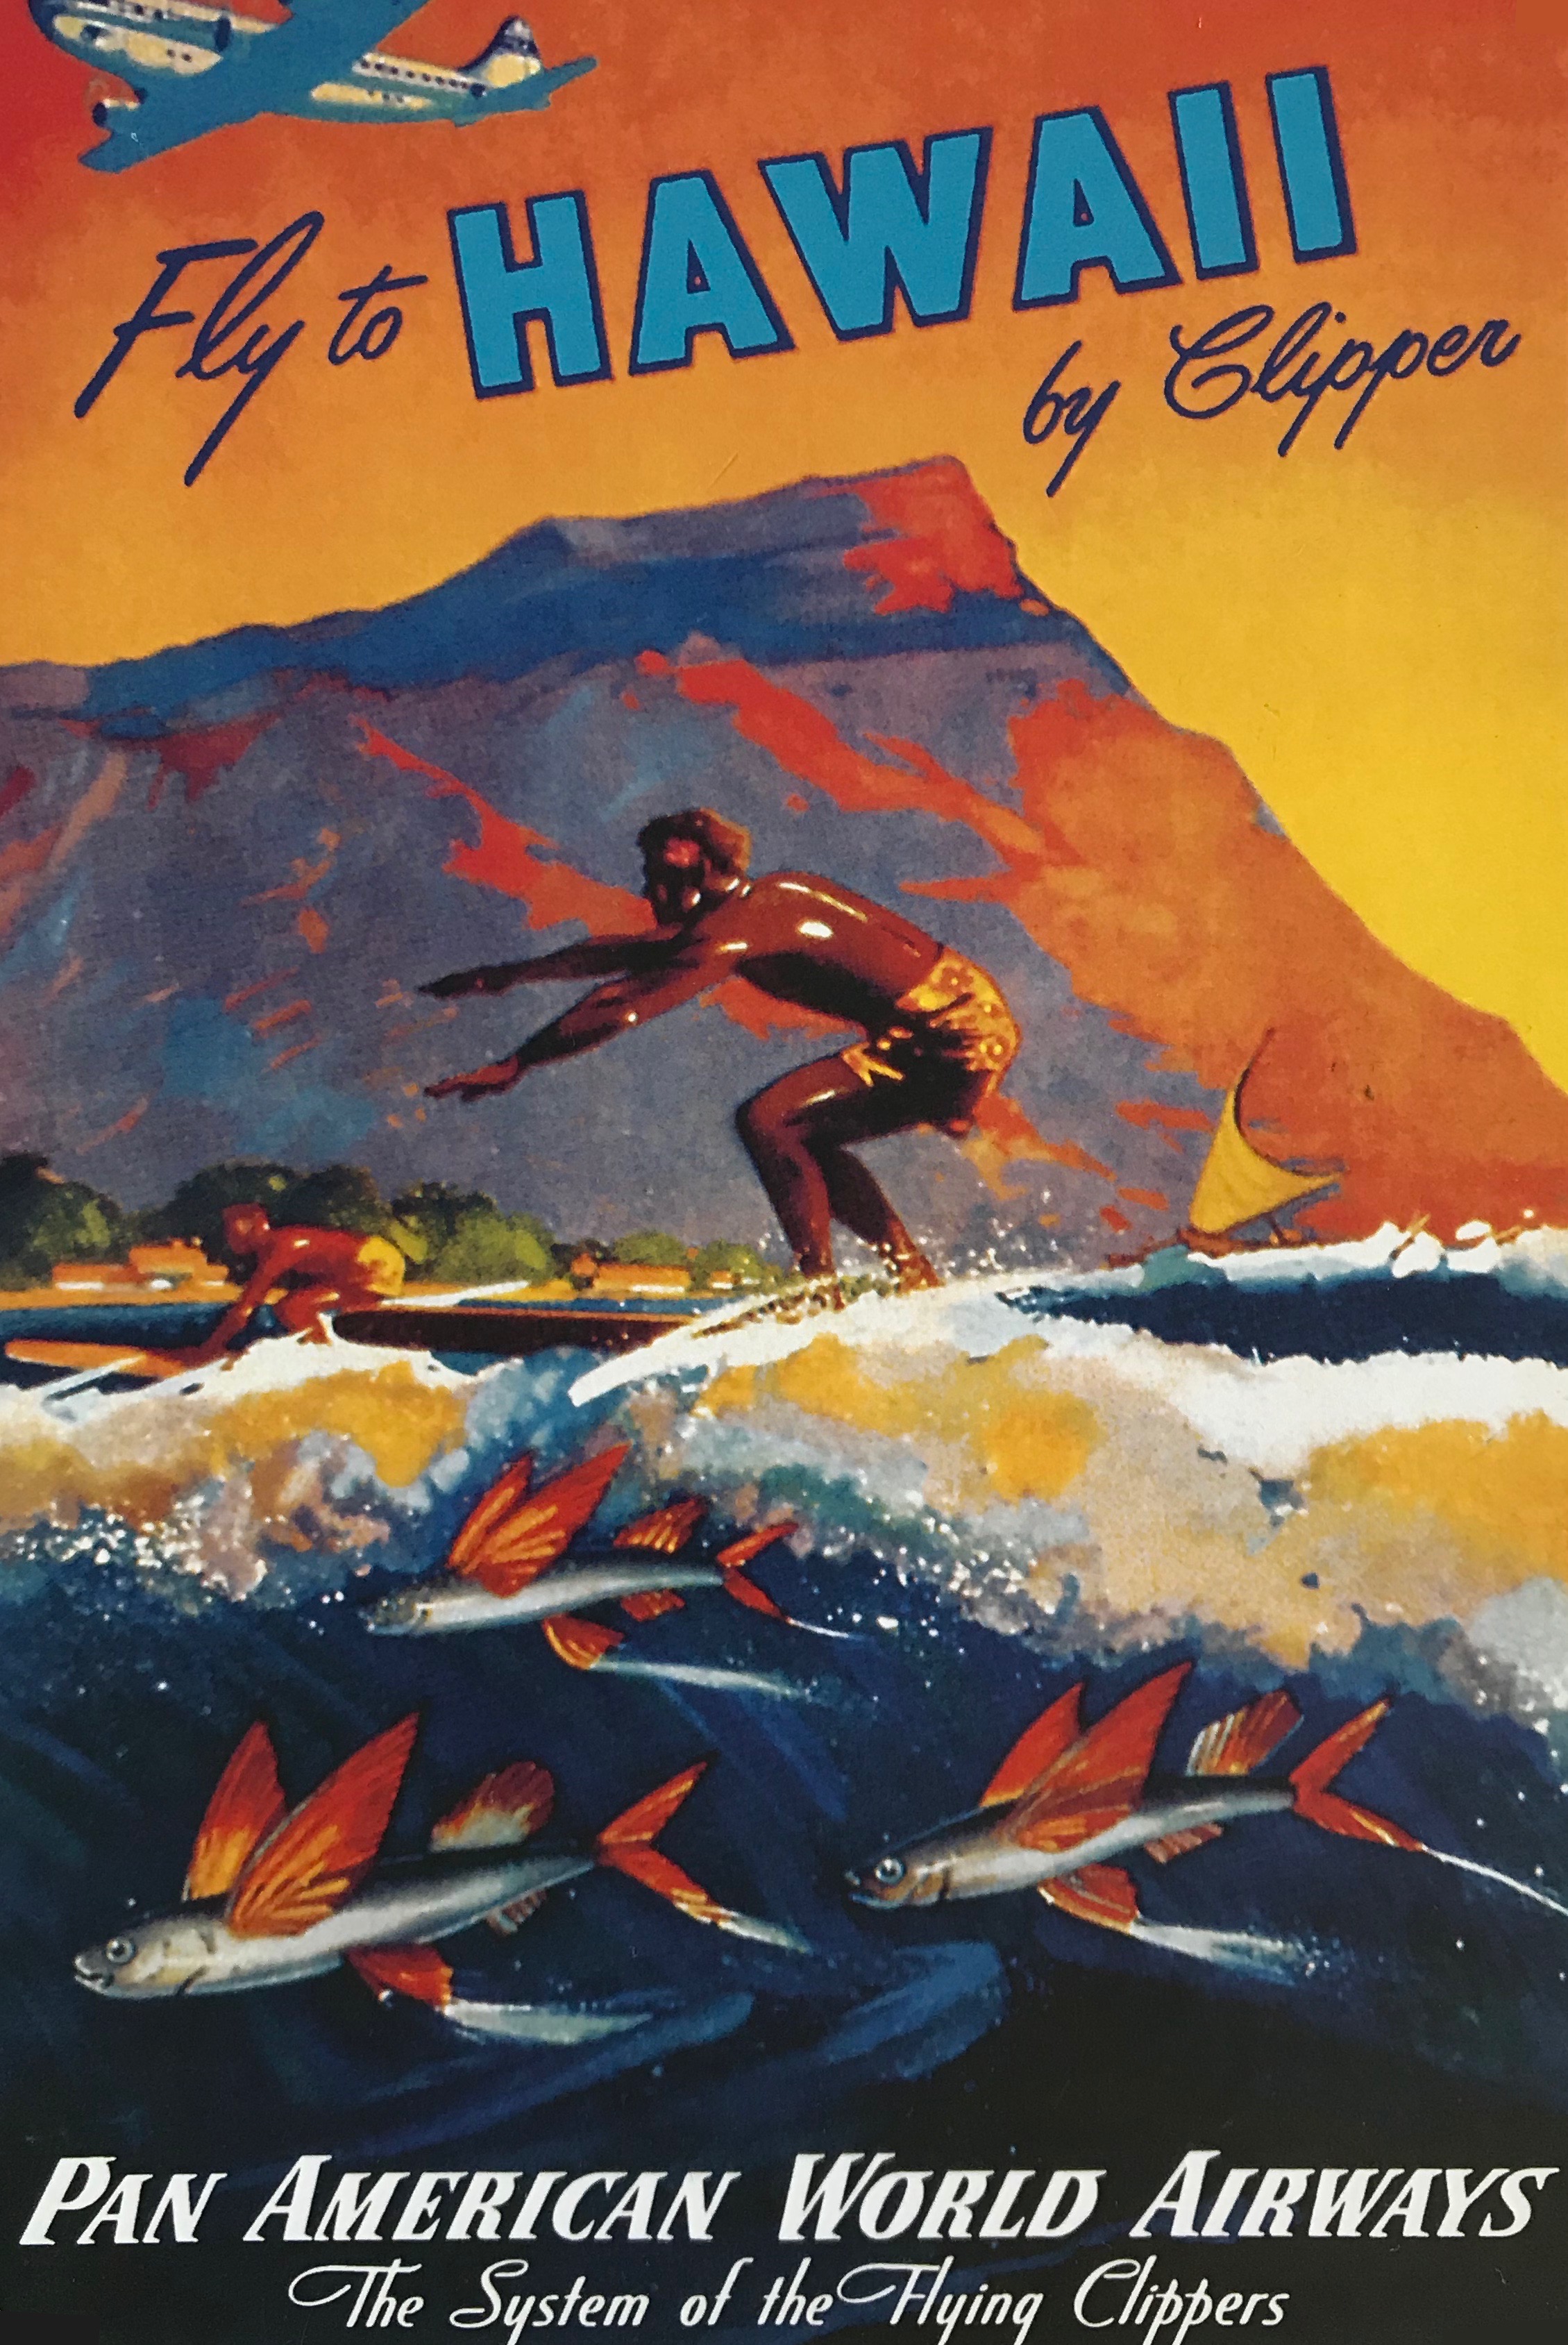 vintage travel aloha poster